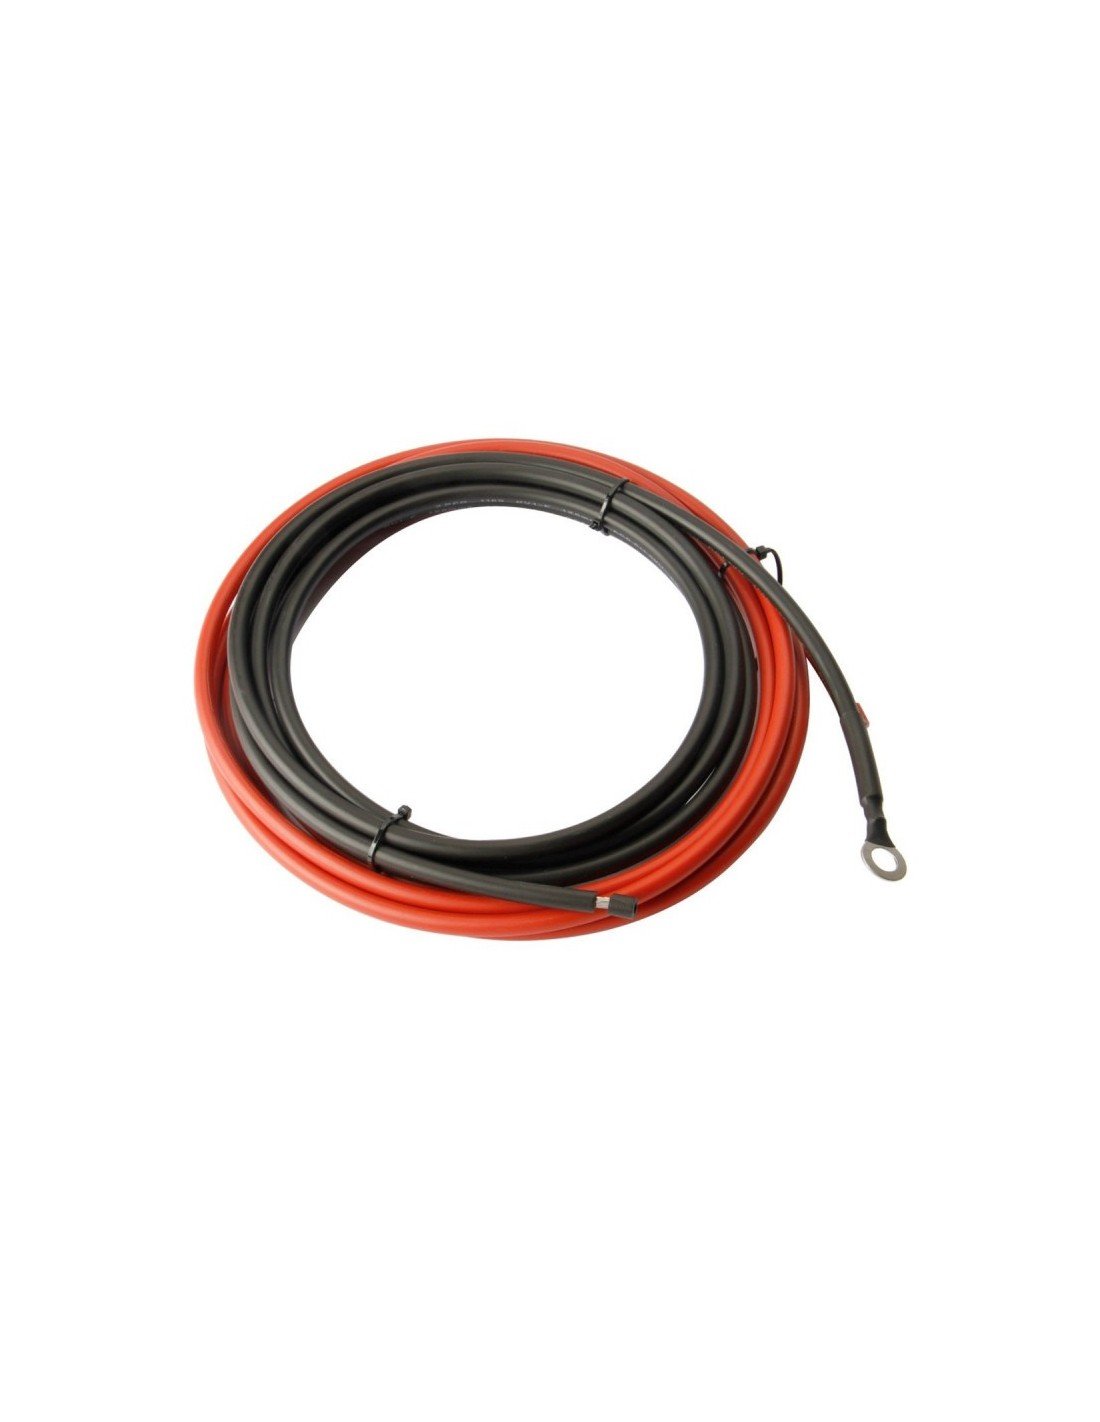 Kit Câble Solaire 6 mm² (2 X 10 mètres Rouge / Noir) + Paire de